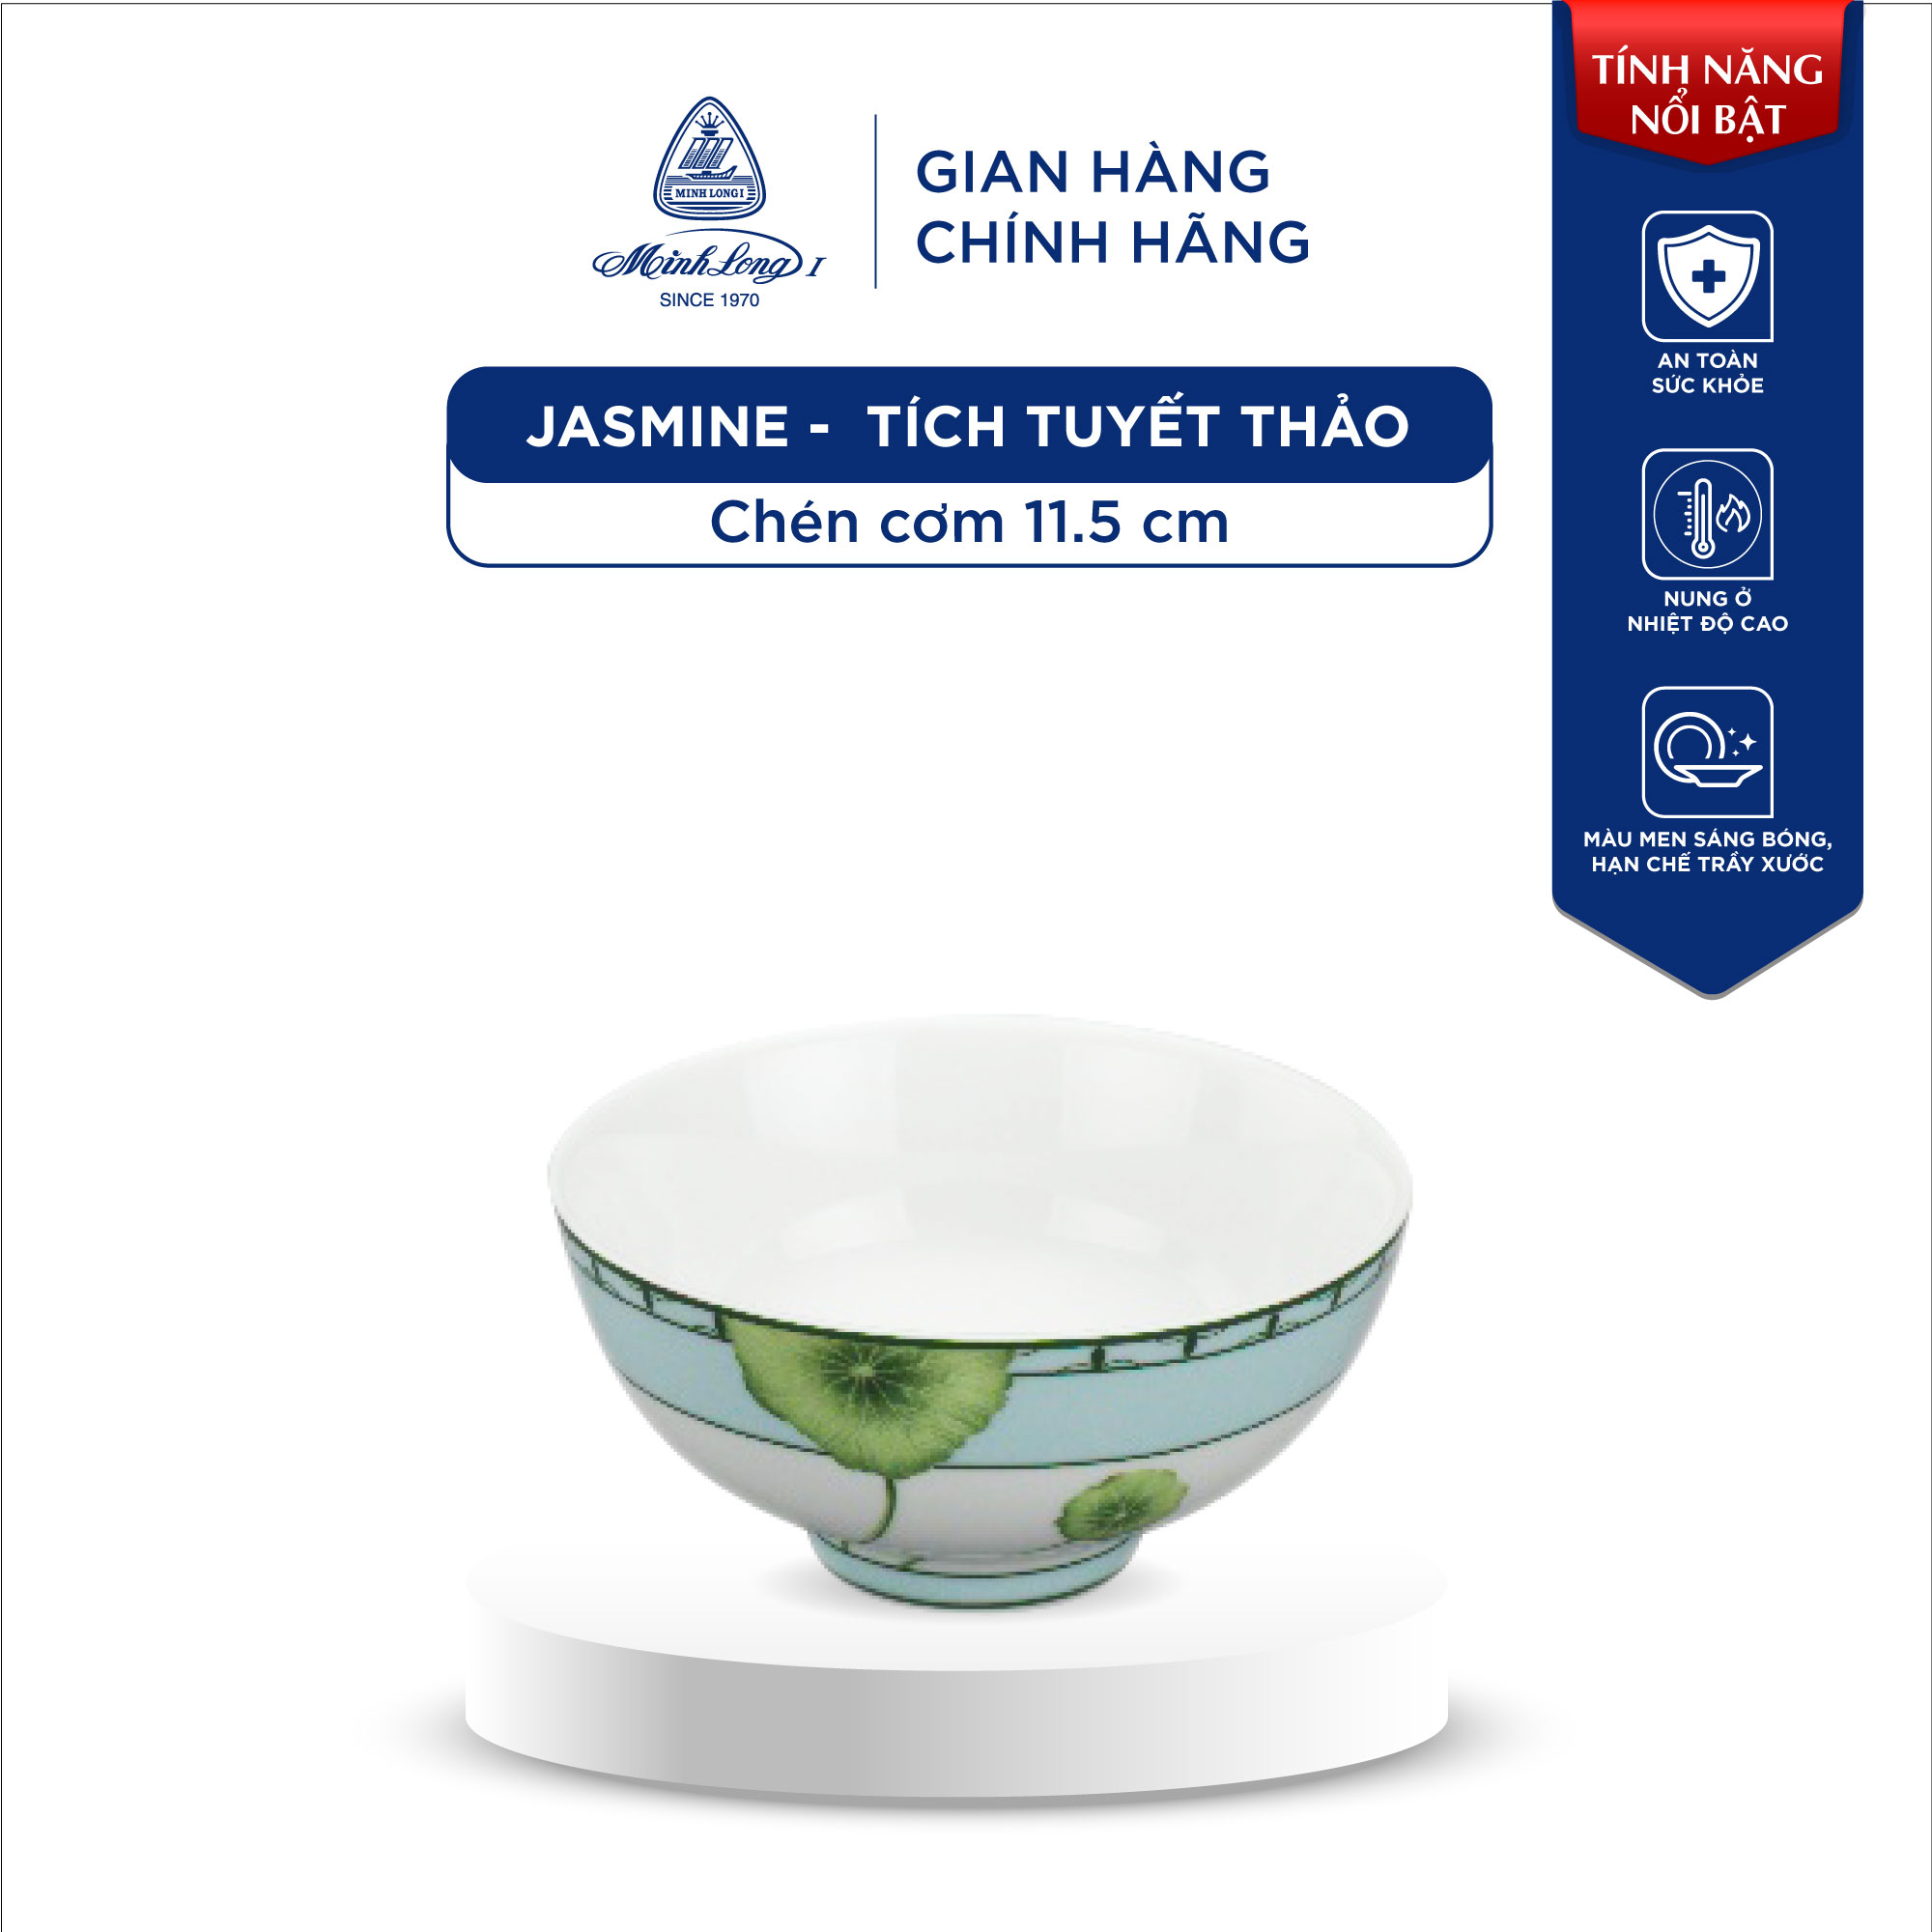 Chén Ăn Cơm Sứ Minh Long - Jasmine - Tích Tuyết Thảo - 11.5 cm